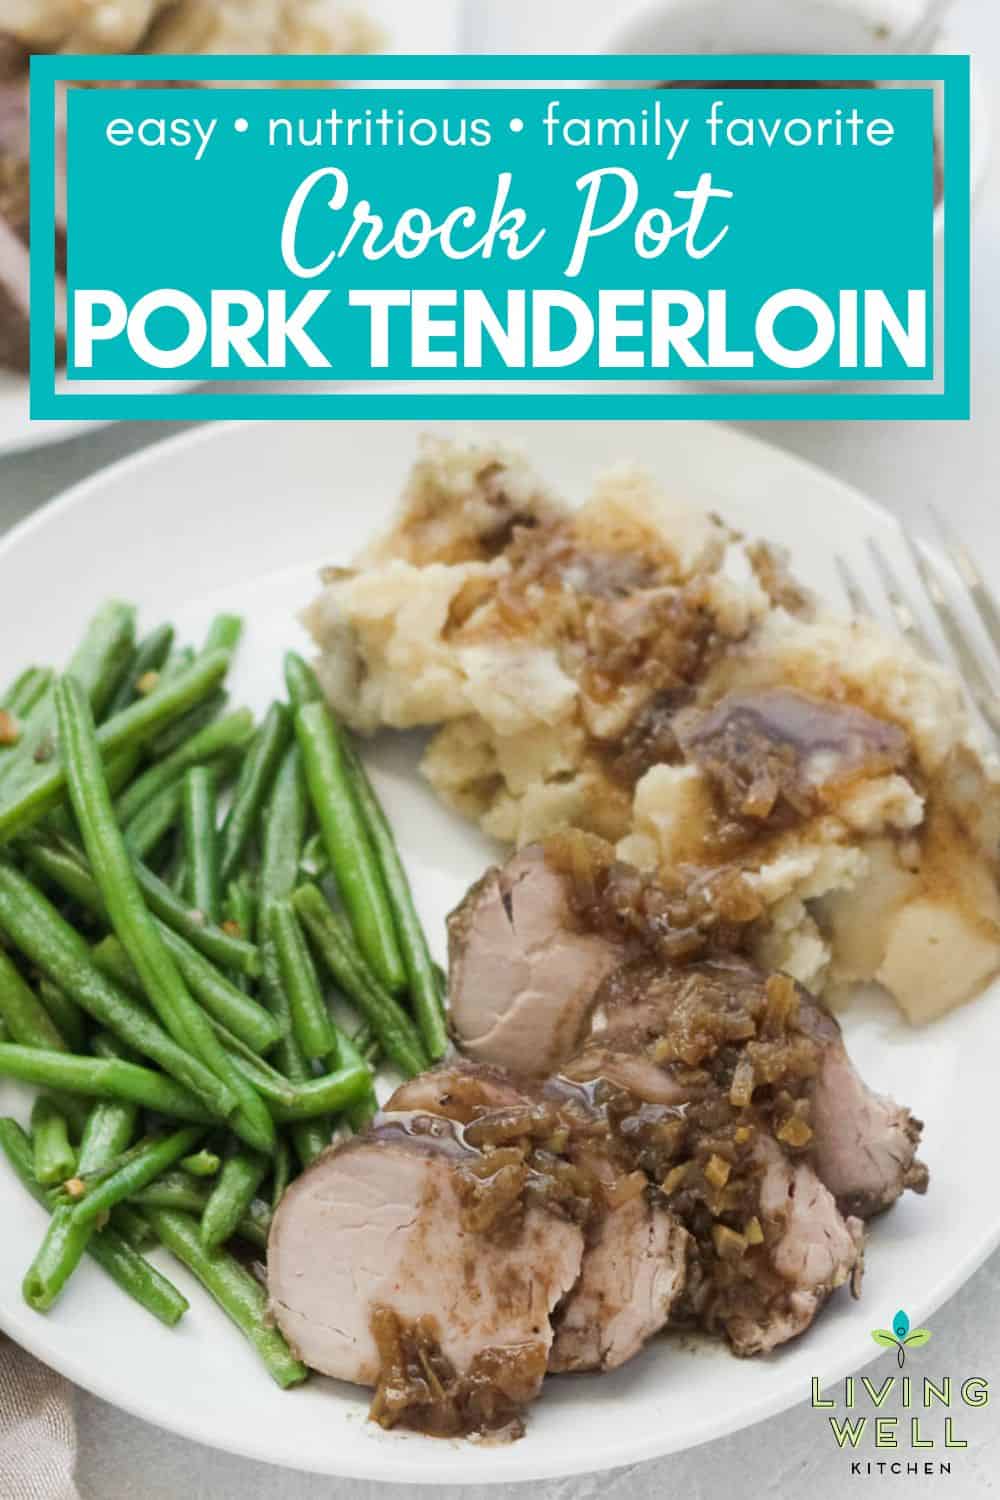 Easy Crock Pot Pork Tenderloin - 10 minute prep, family favorite!